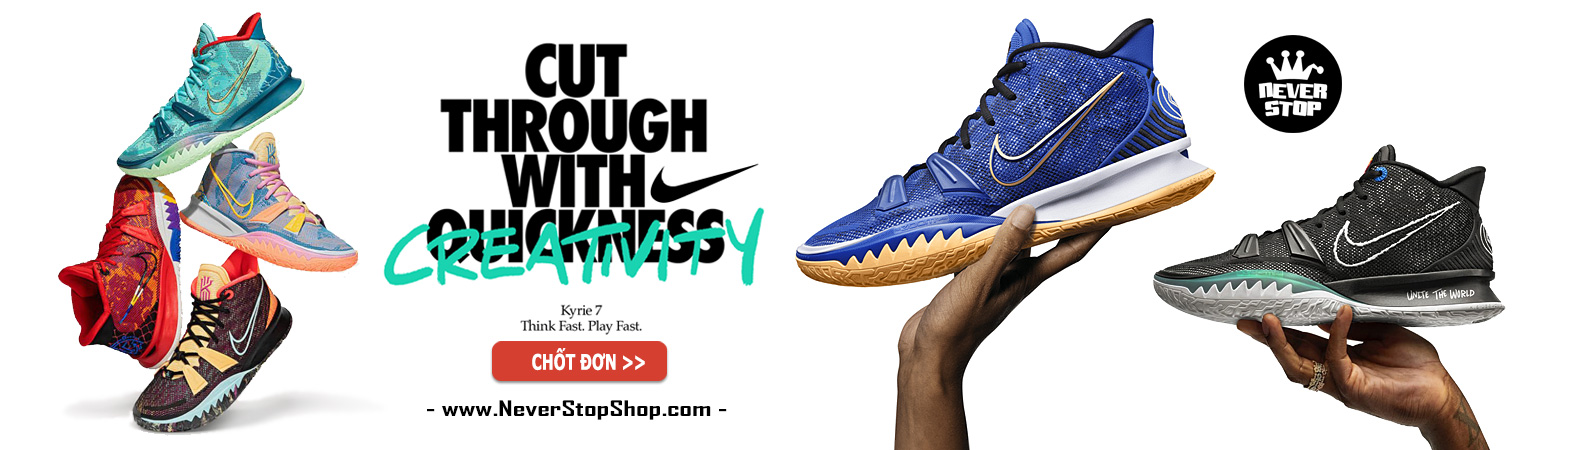 Giày Nike Kyrie 7 bóng rổ cổ cao nam sfake replica giá rẻ tốt nhất HCM NeverStopShop